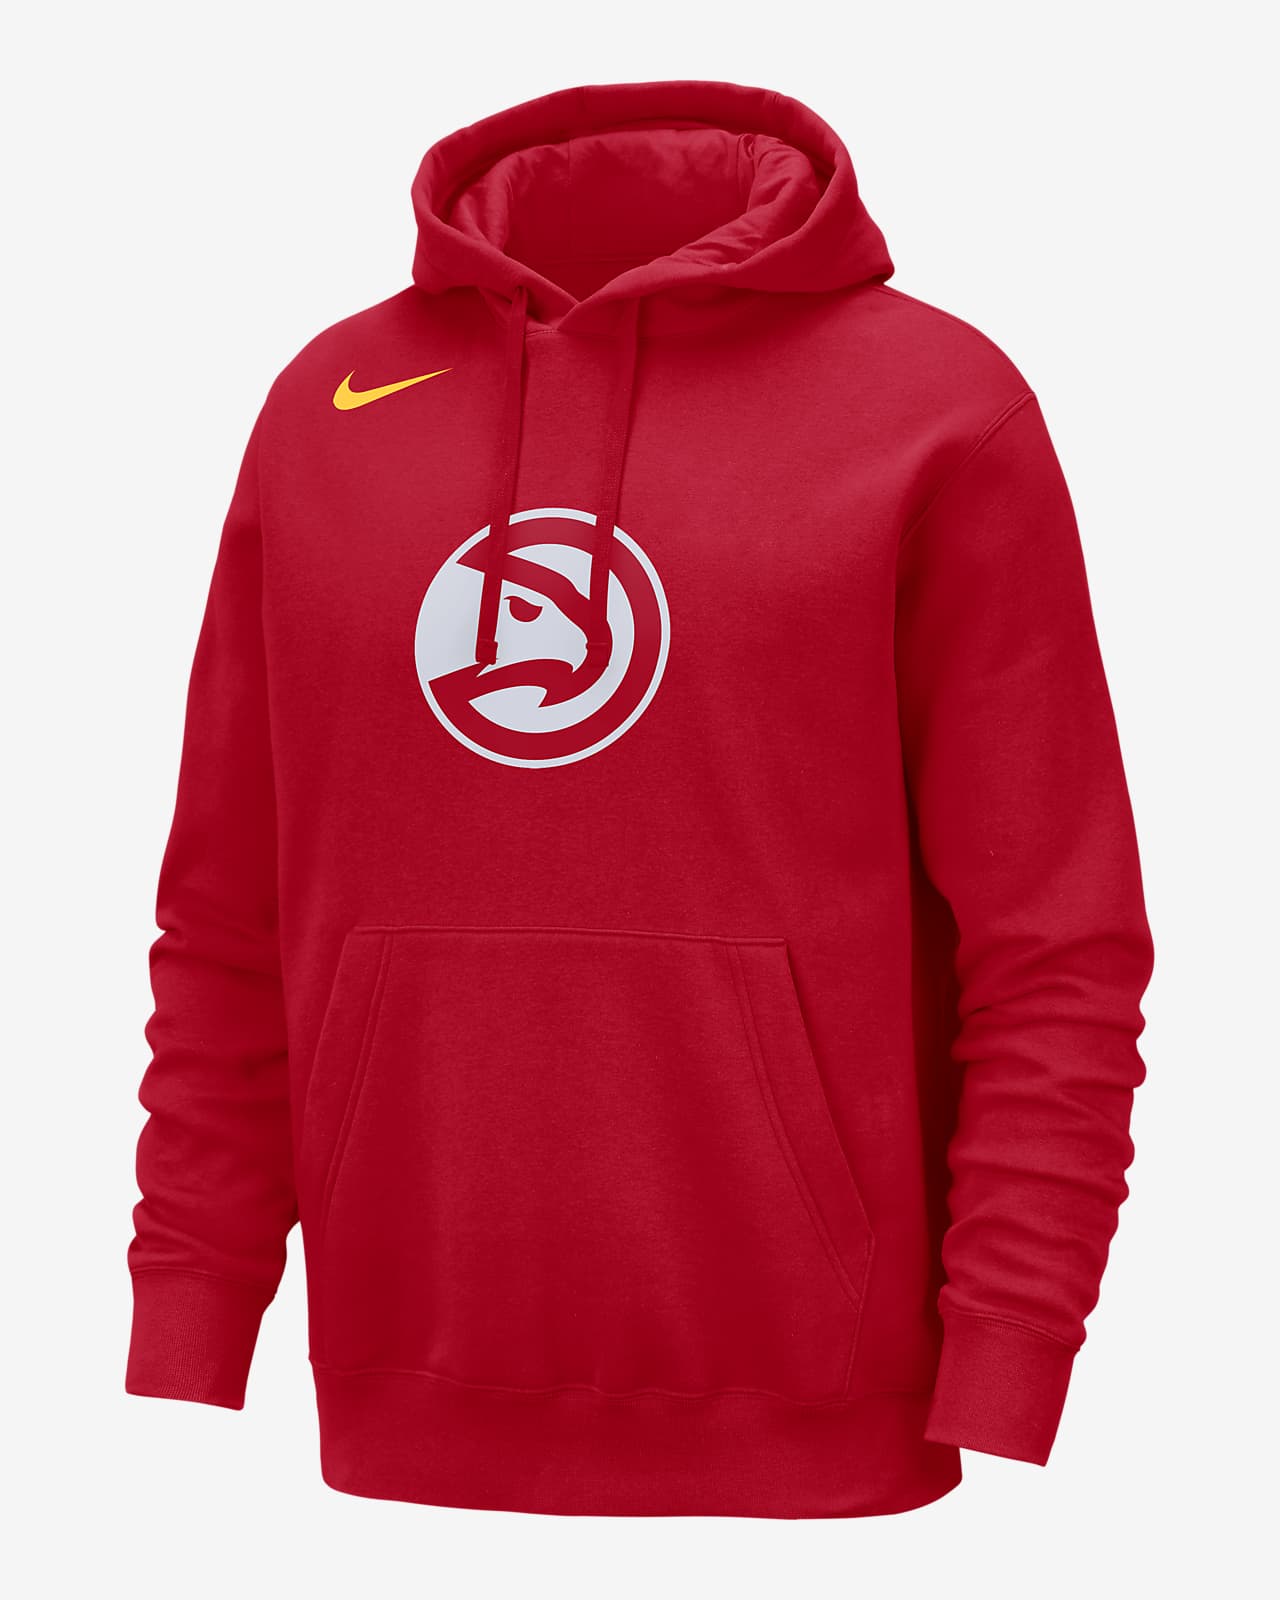 Atlanta Hawks Club Sudadera con capucha Nike de la NBA - Hombre